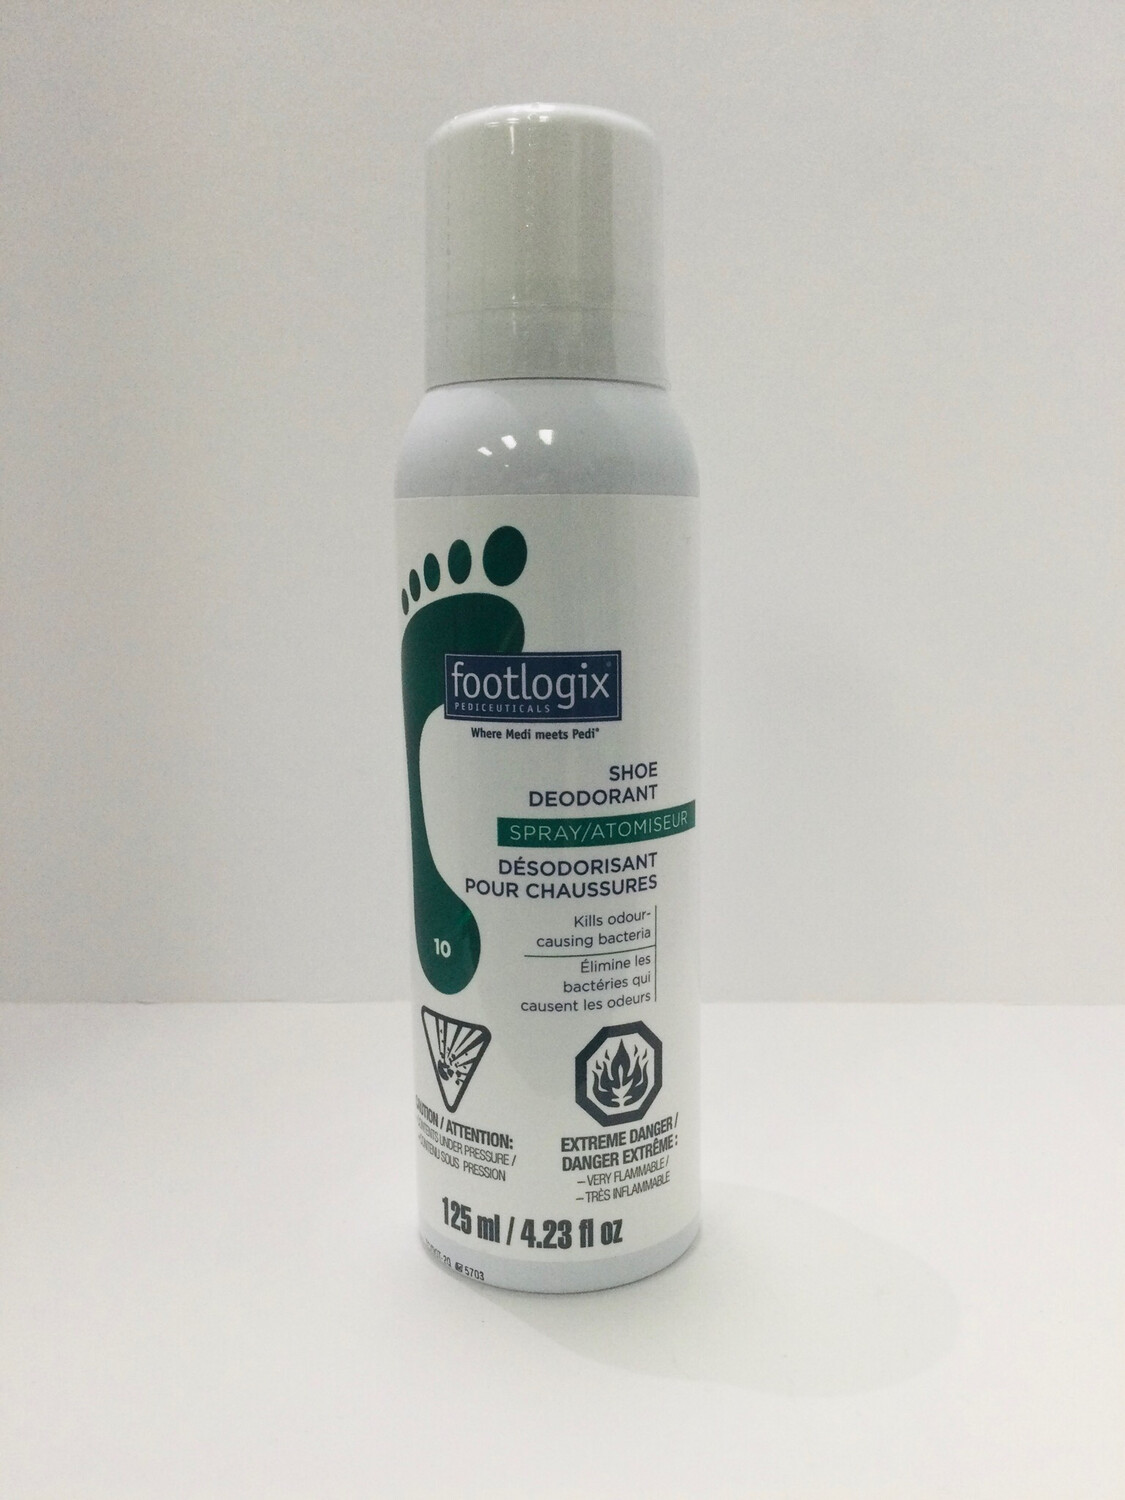 FL (10) Shoe Deodorant Spray 4.23oz